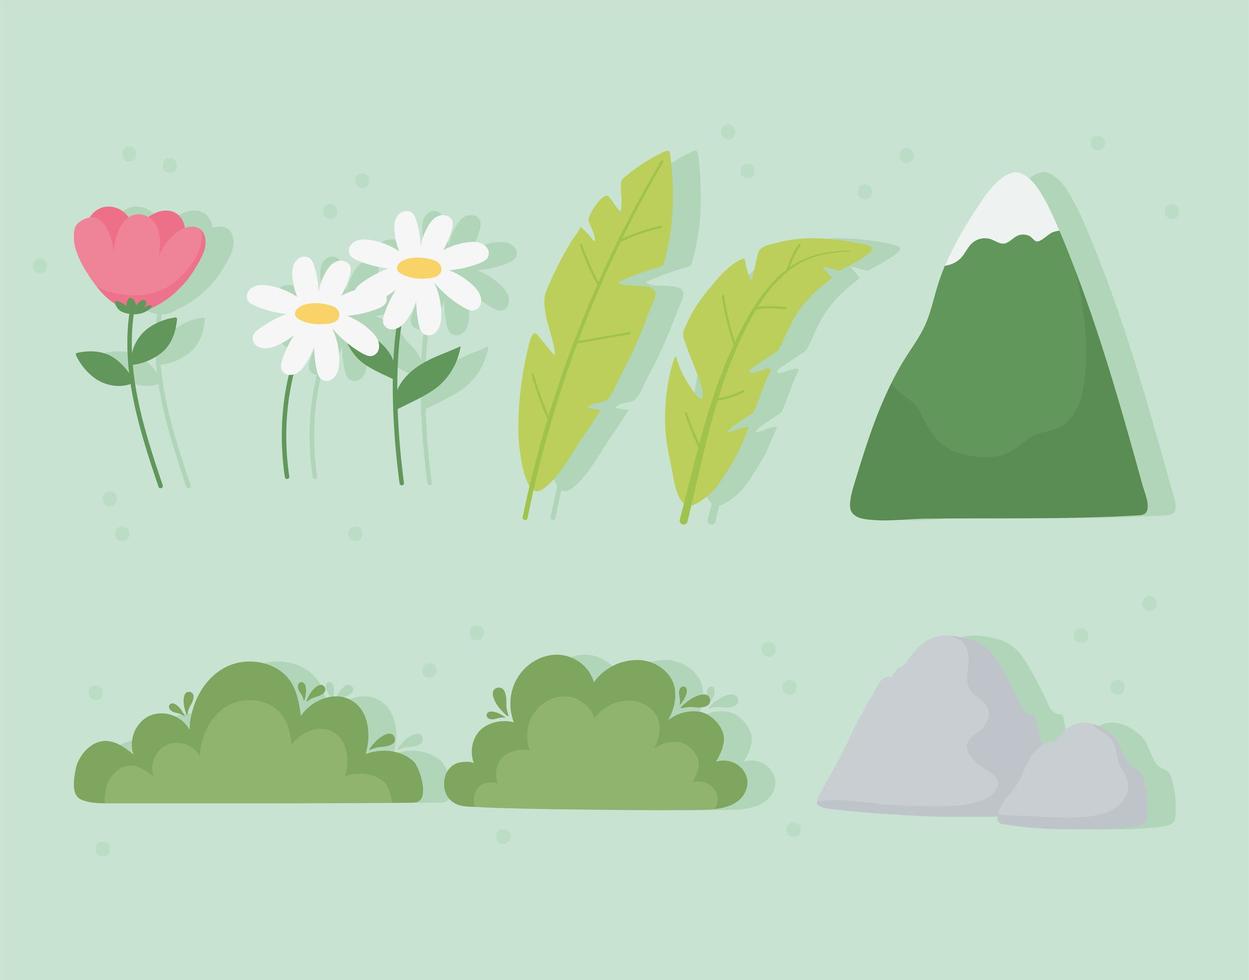 montagna, foglie, fiori, cespuglio, icone di pietra vettore